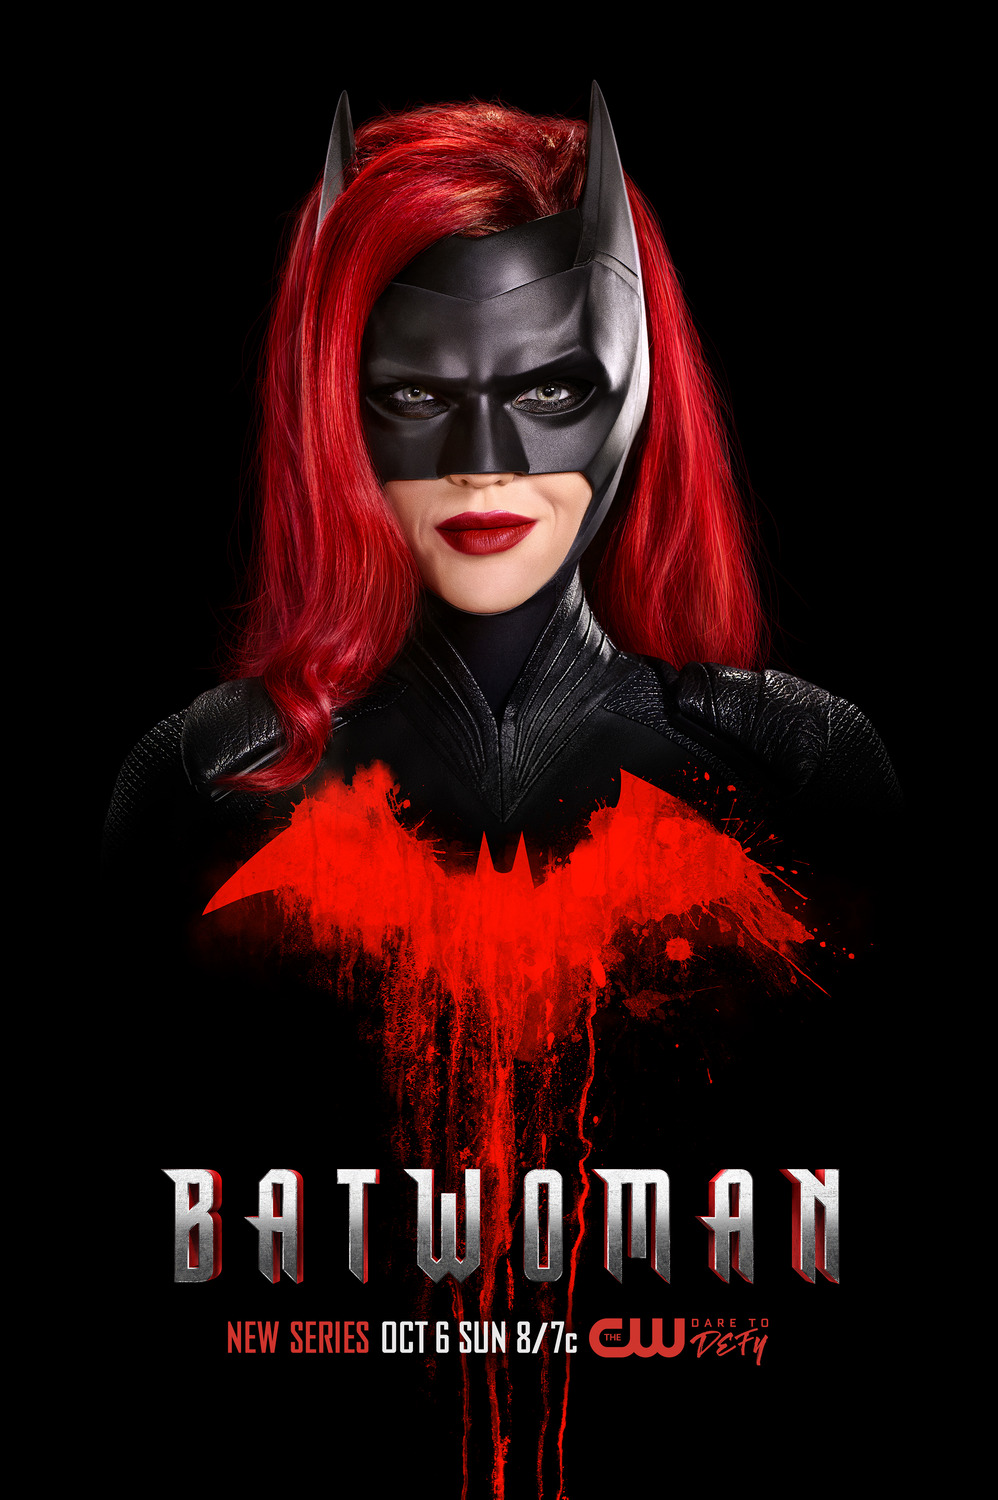 Série da Batwoman ganha novos pôsteres - Pipoca Moderna